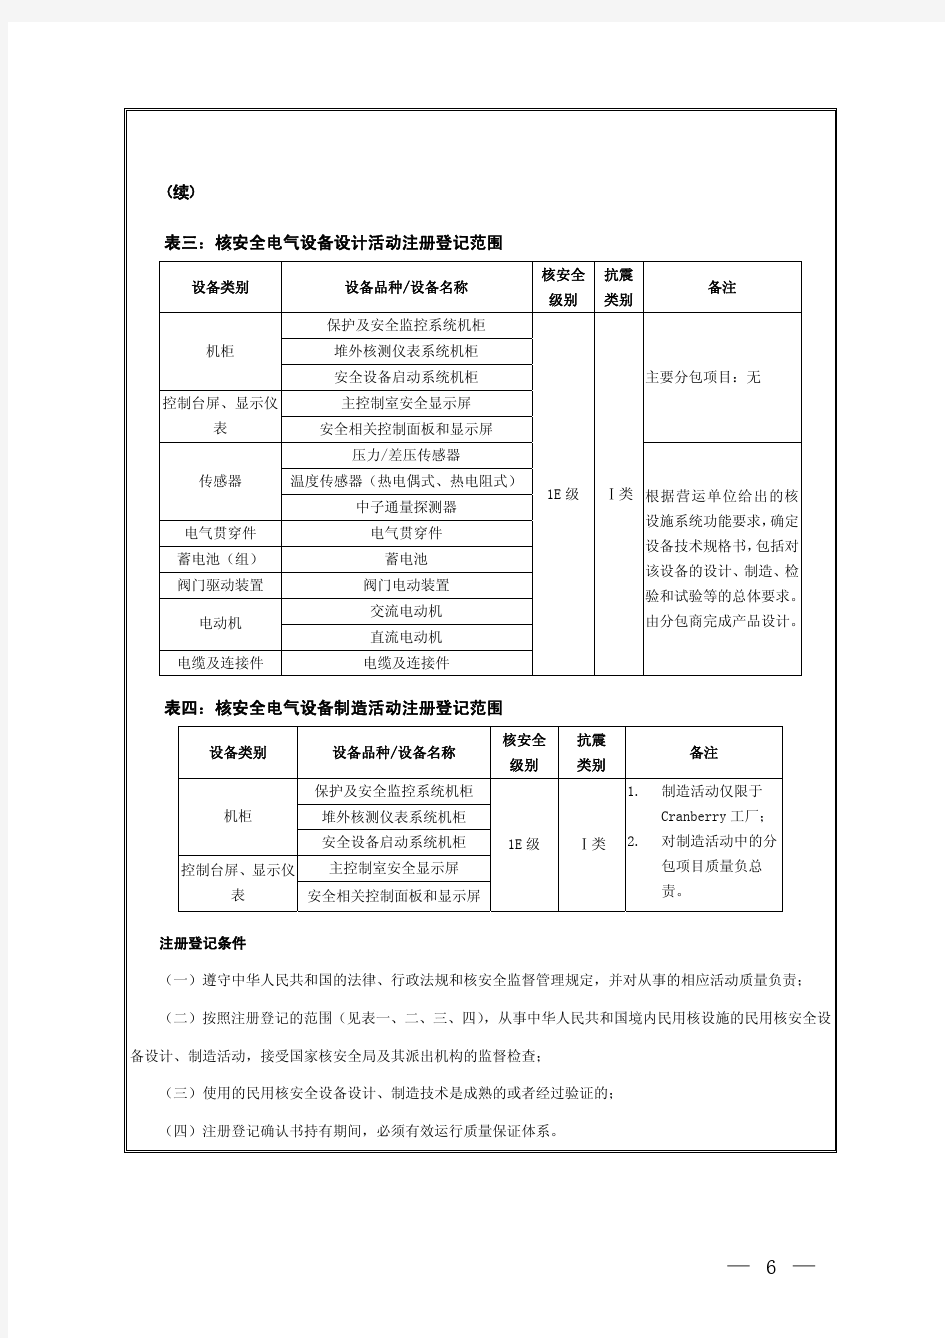 中华人民共和国民用核安全设备活动境外单位注册登记名单